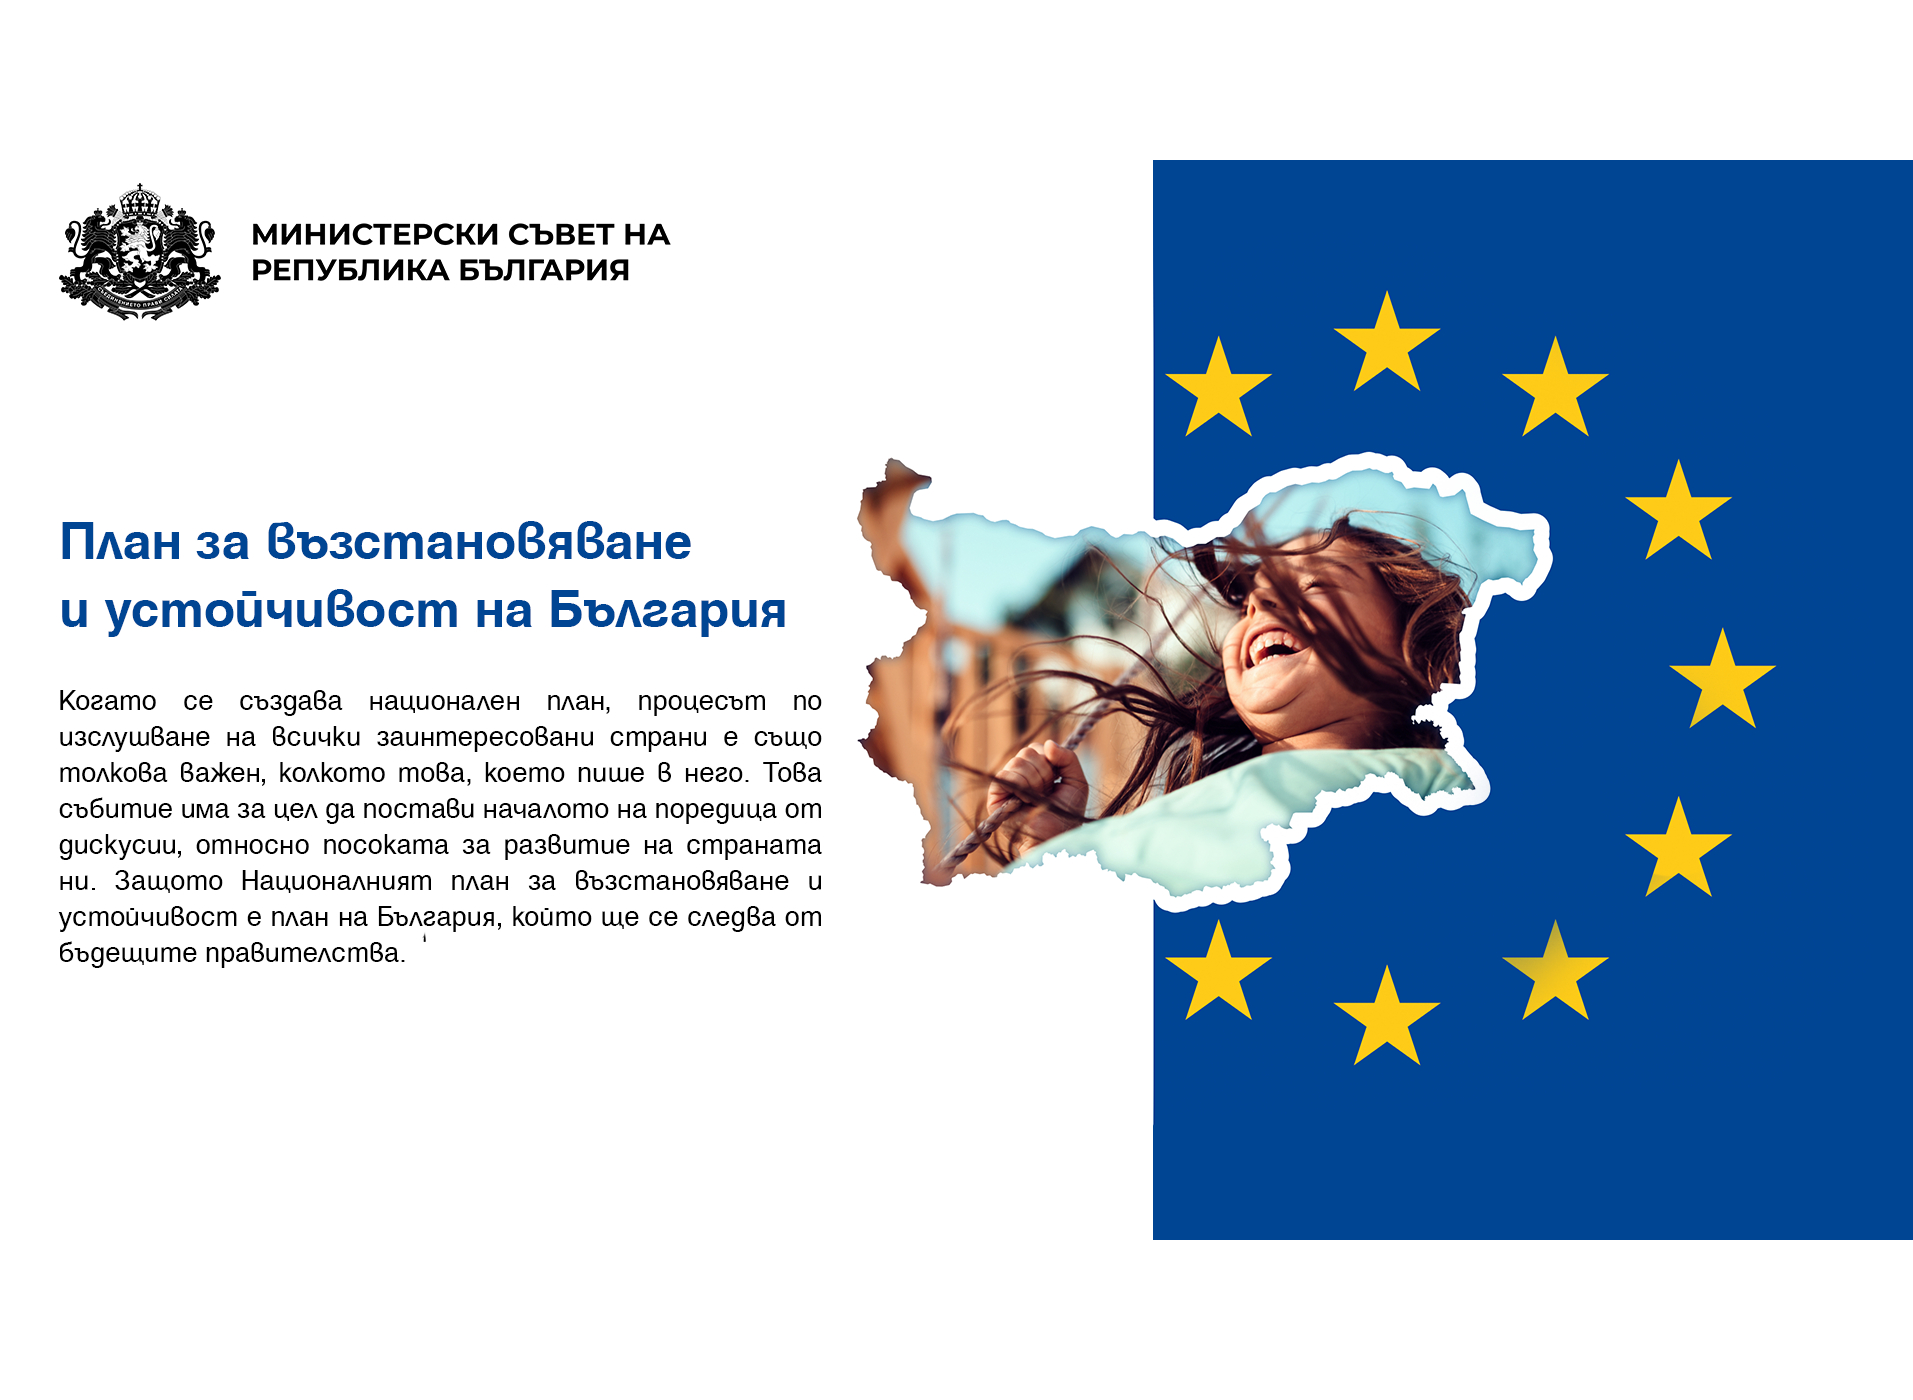 Публична дискусия по четвъртия стълб от Националния план за възстановяване и устойчивост – „Справедлива България”